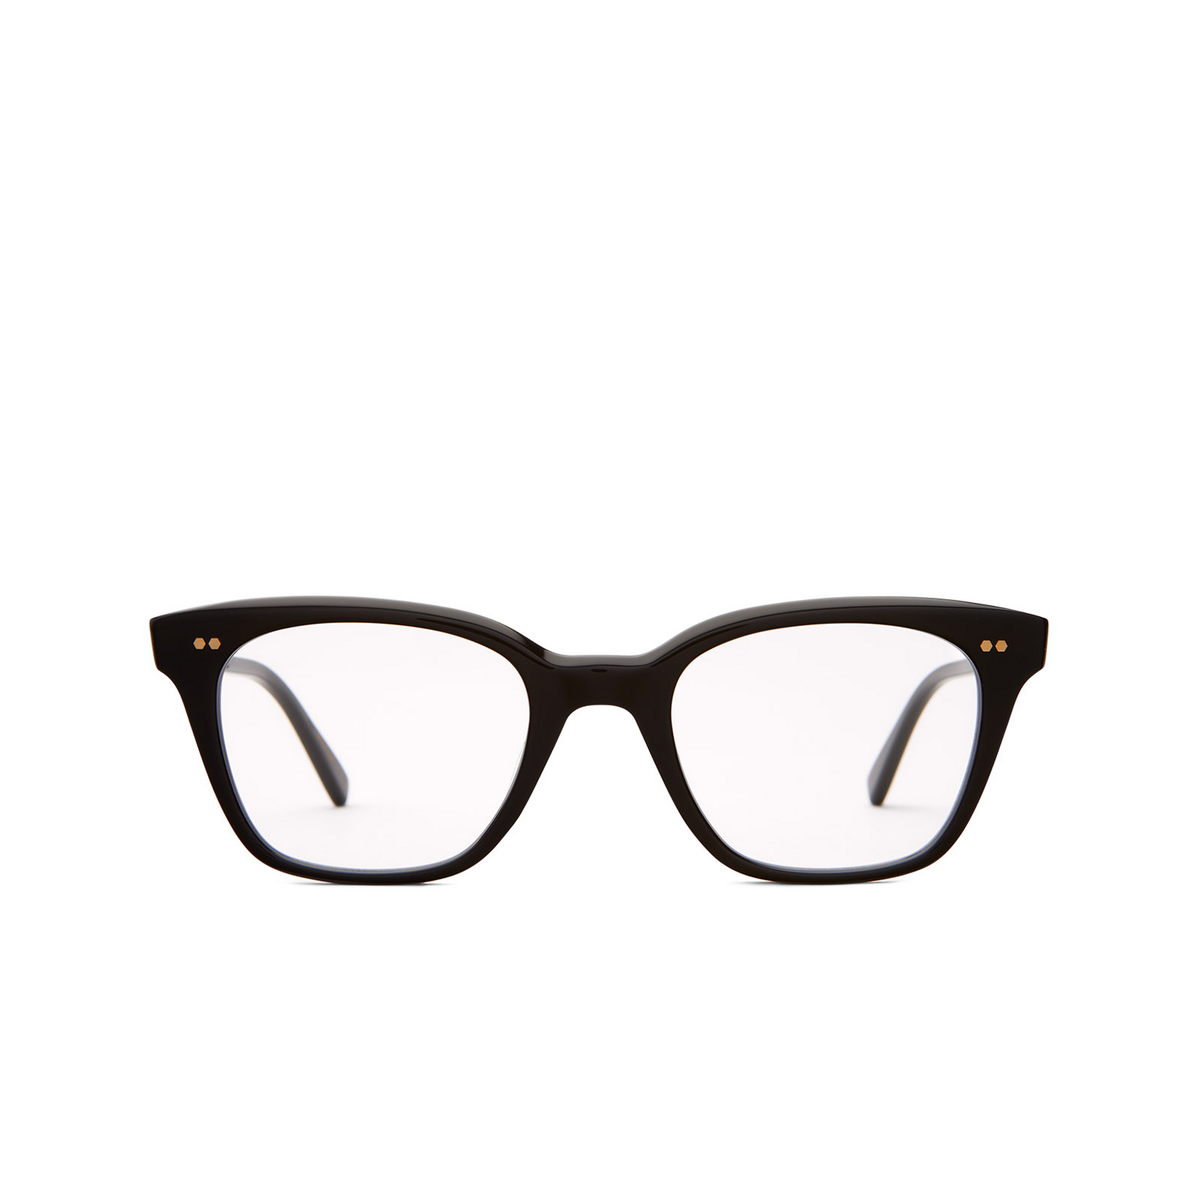 Mr. Leight MORGAN C Eyeglasses BK-12KG Black-12K White Gold - front view